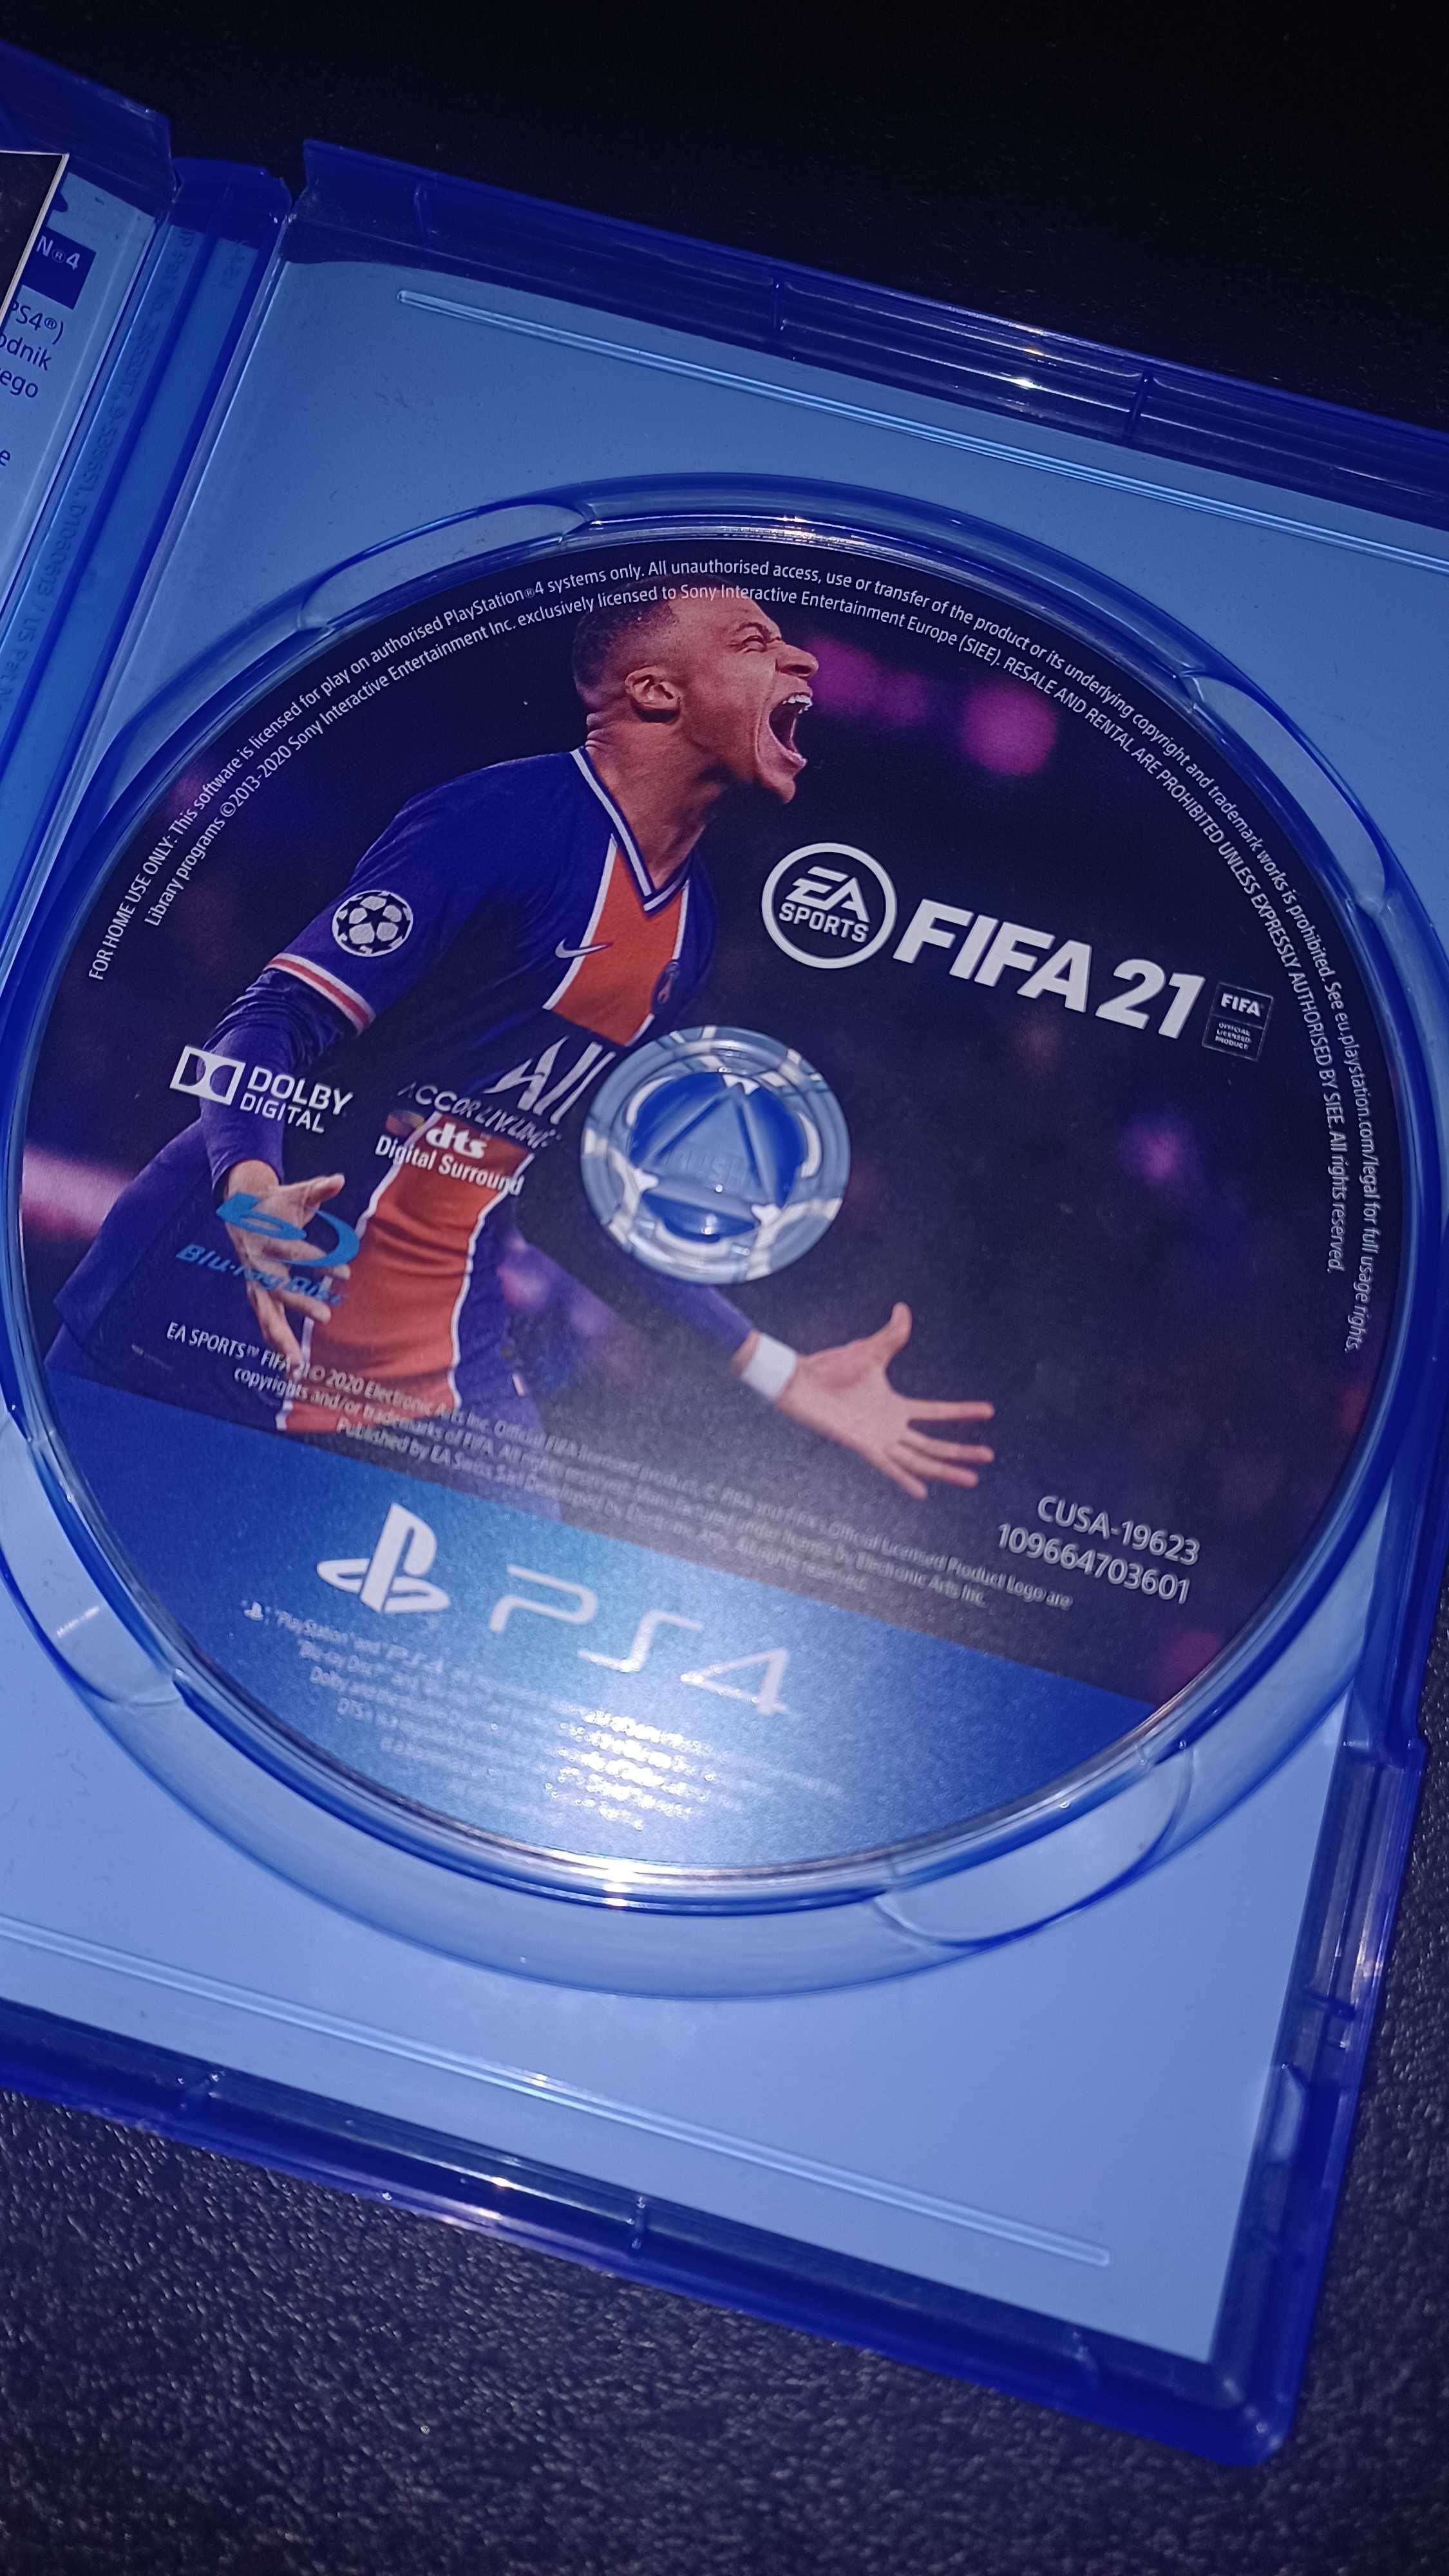 Gra na konsolę PS4 Fifa 21